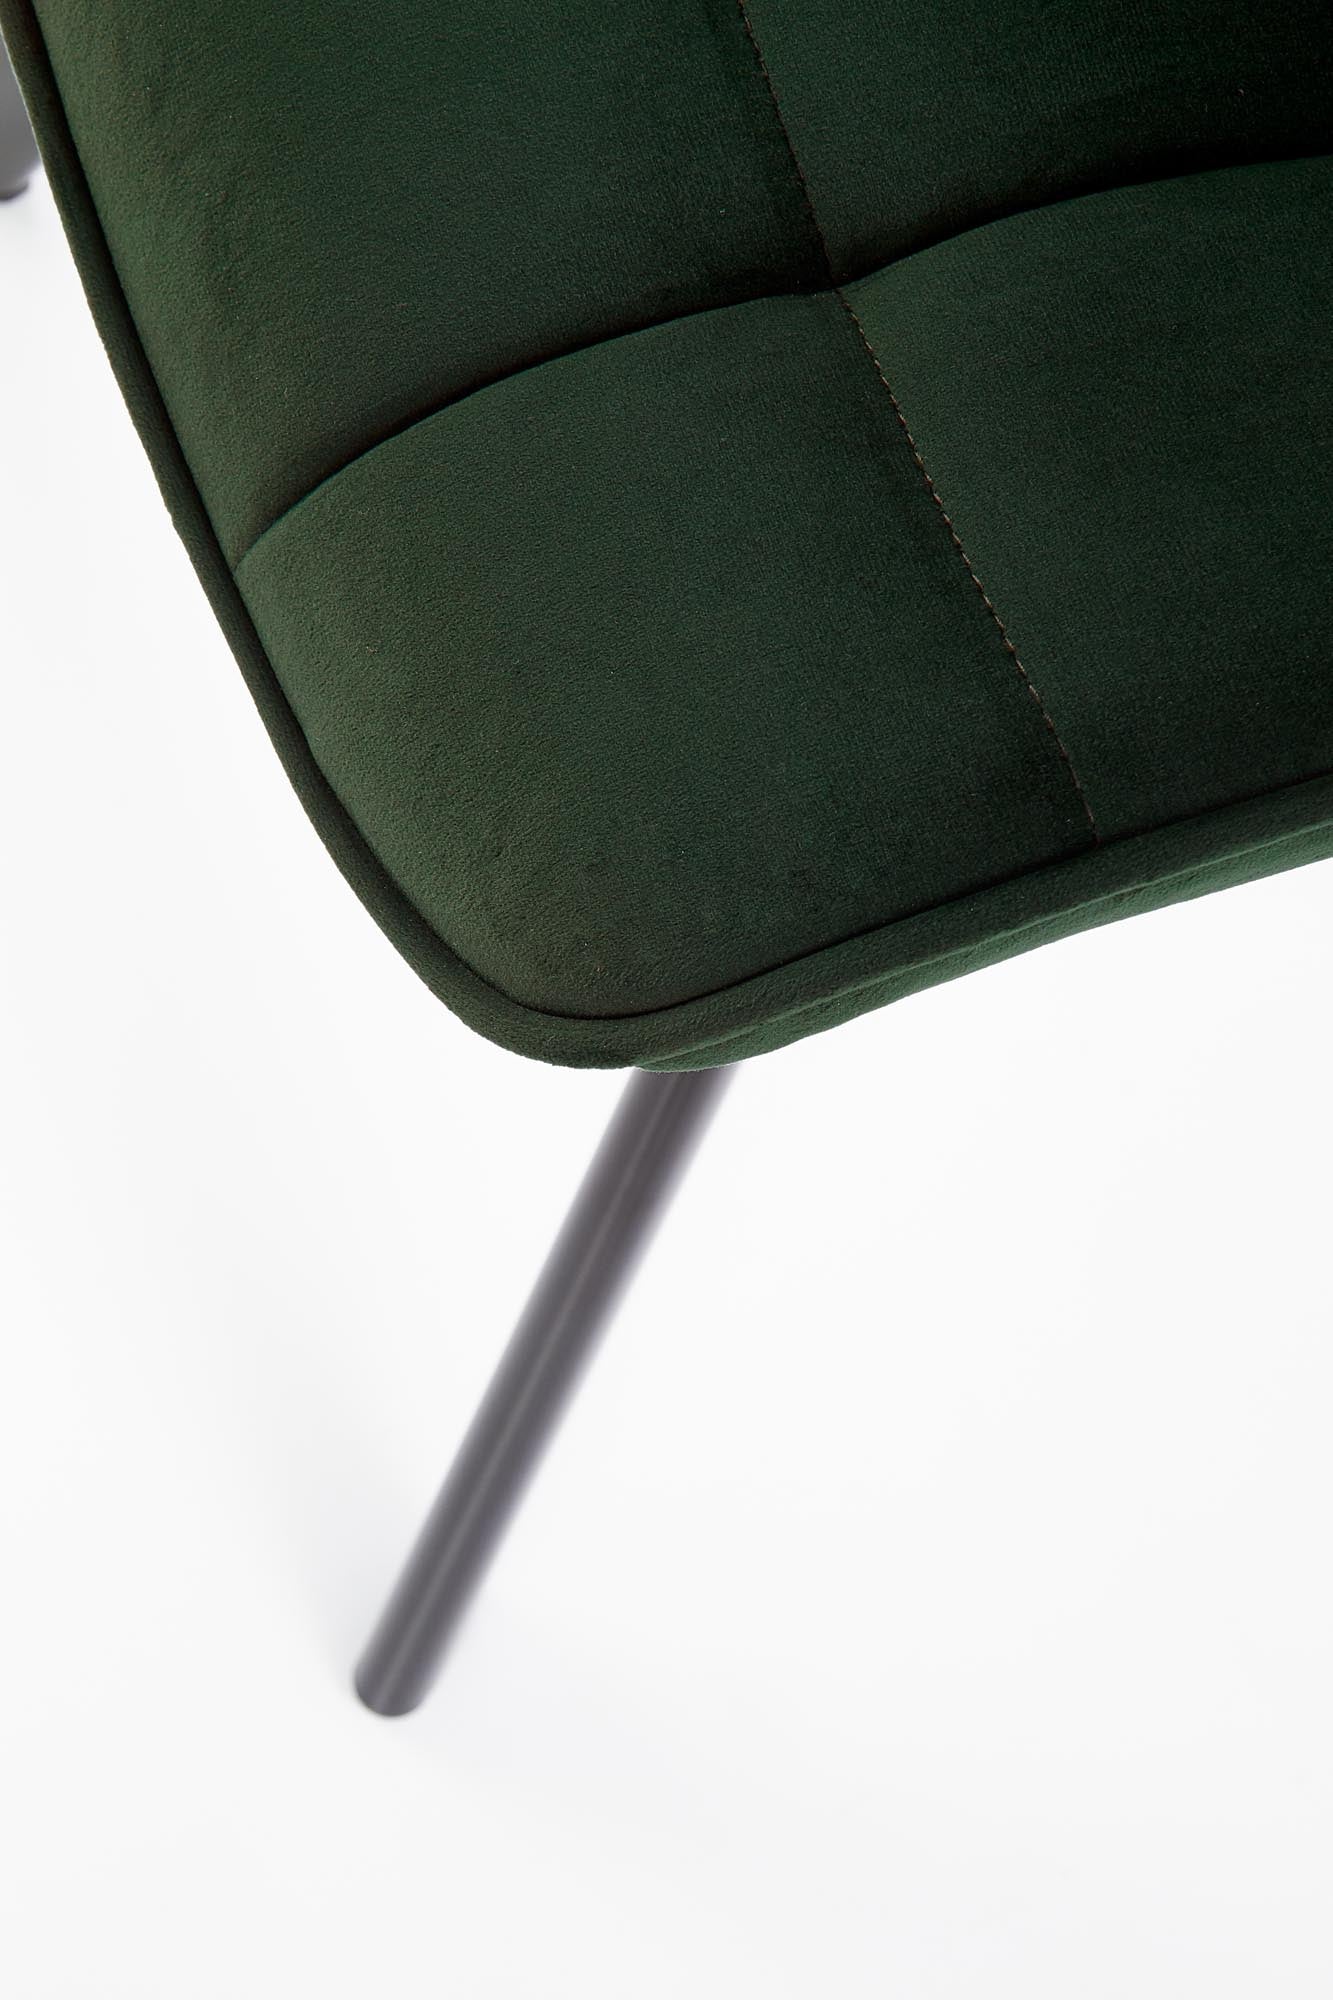 Kay szék (sötétzöld) - Marco Mobili Bútoráruház - Szék